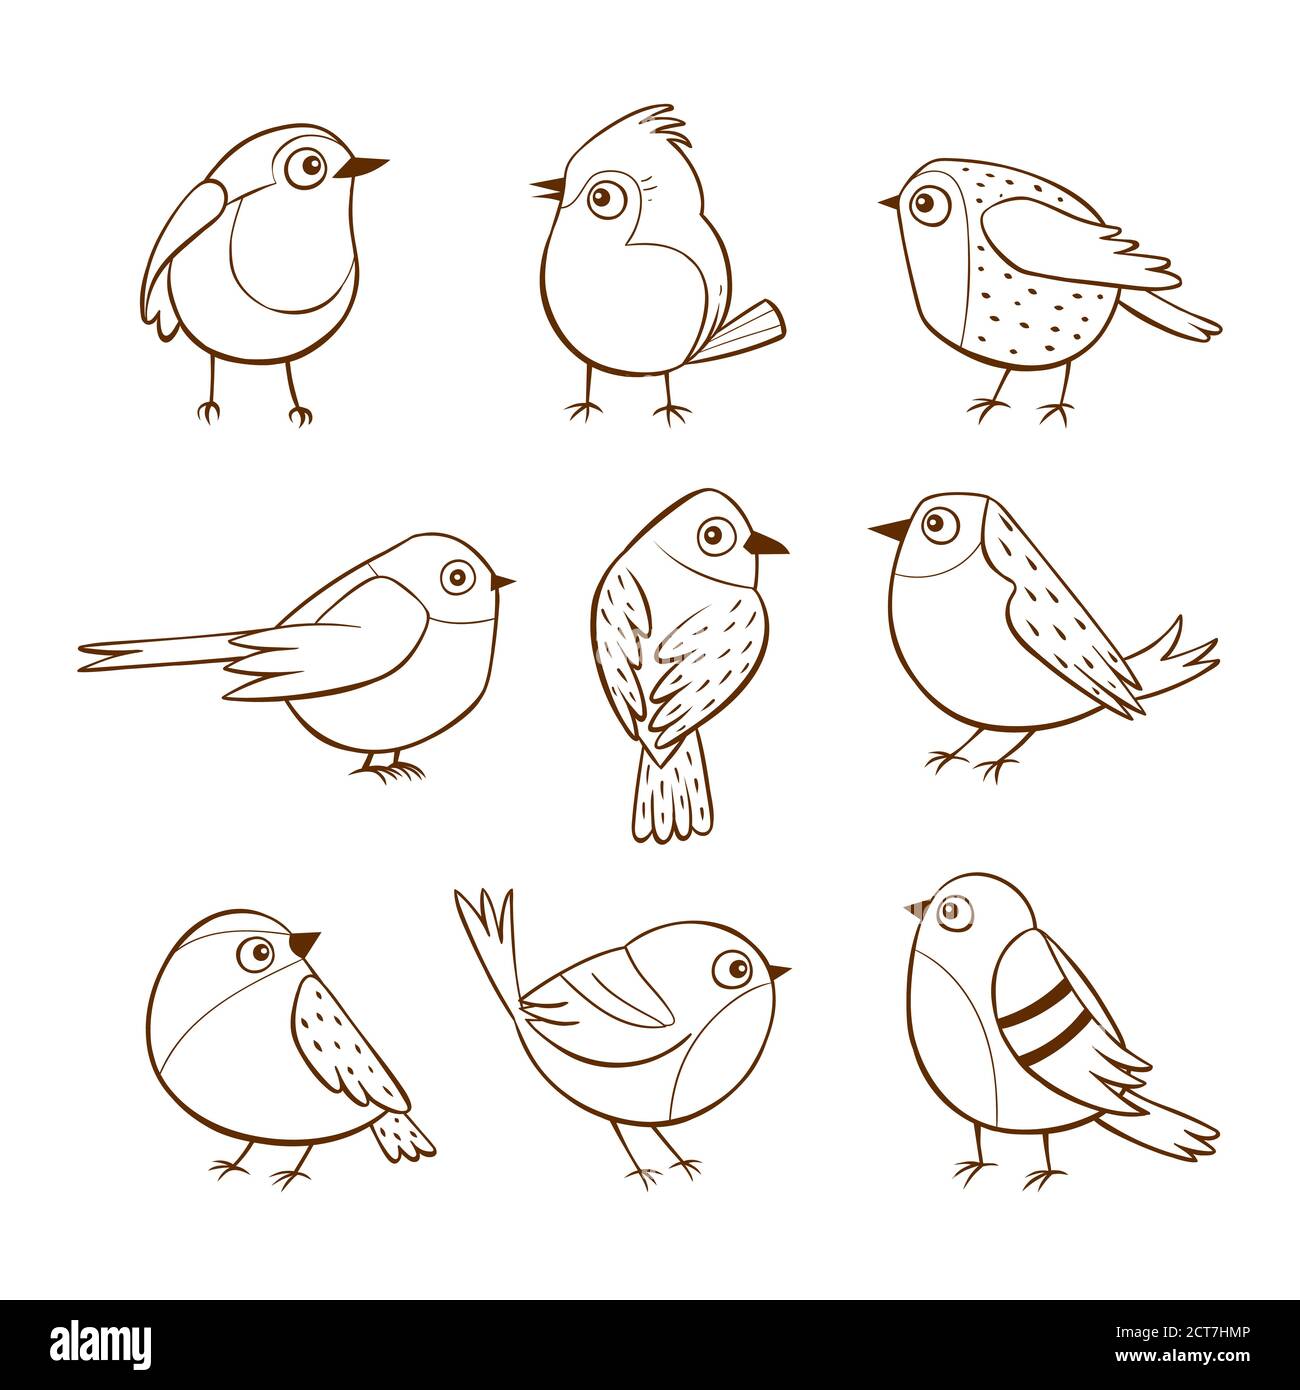 Piccoli uccelli disegnati a mano in diverse pose, isolati su sfondo bianco. Illustrazione vettoriale. Illustrazione Vettoriale